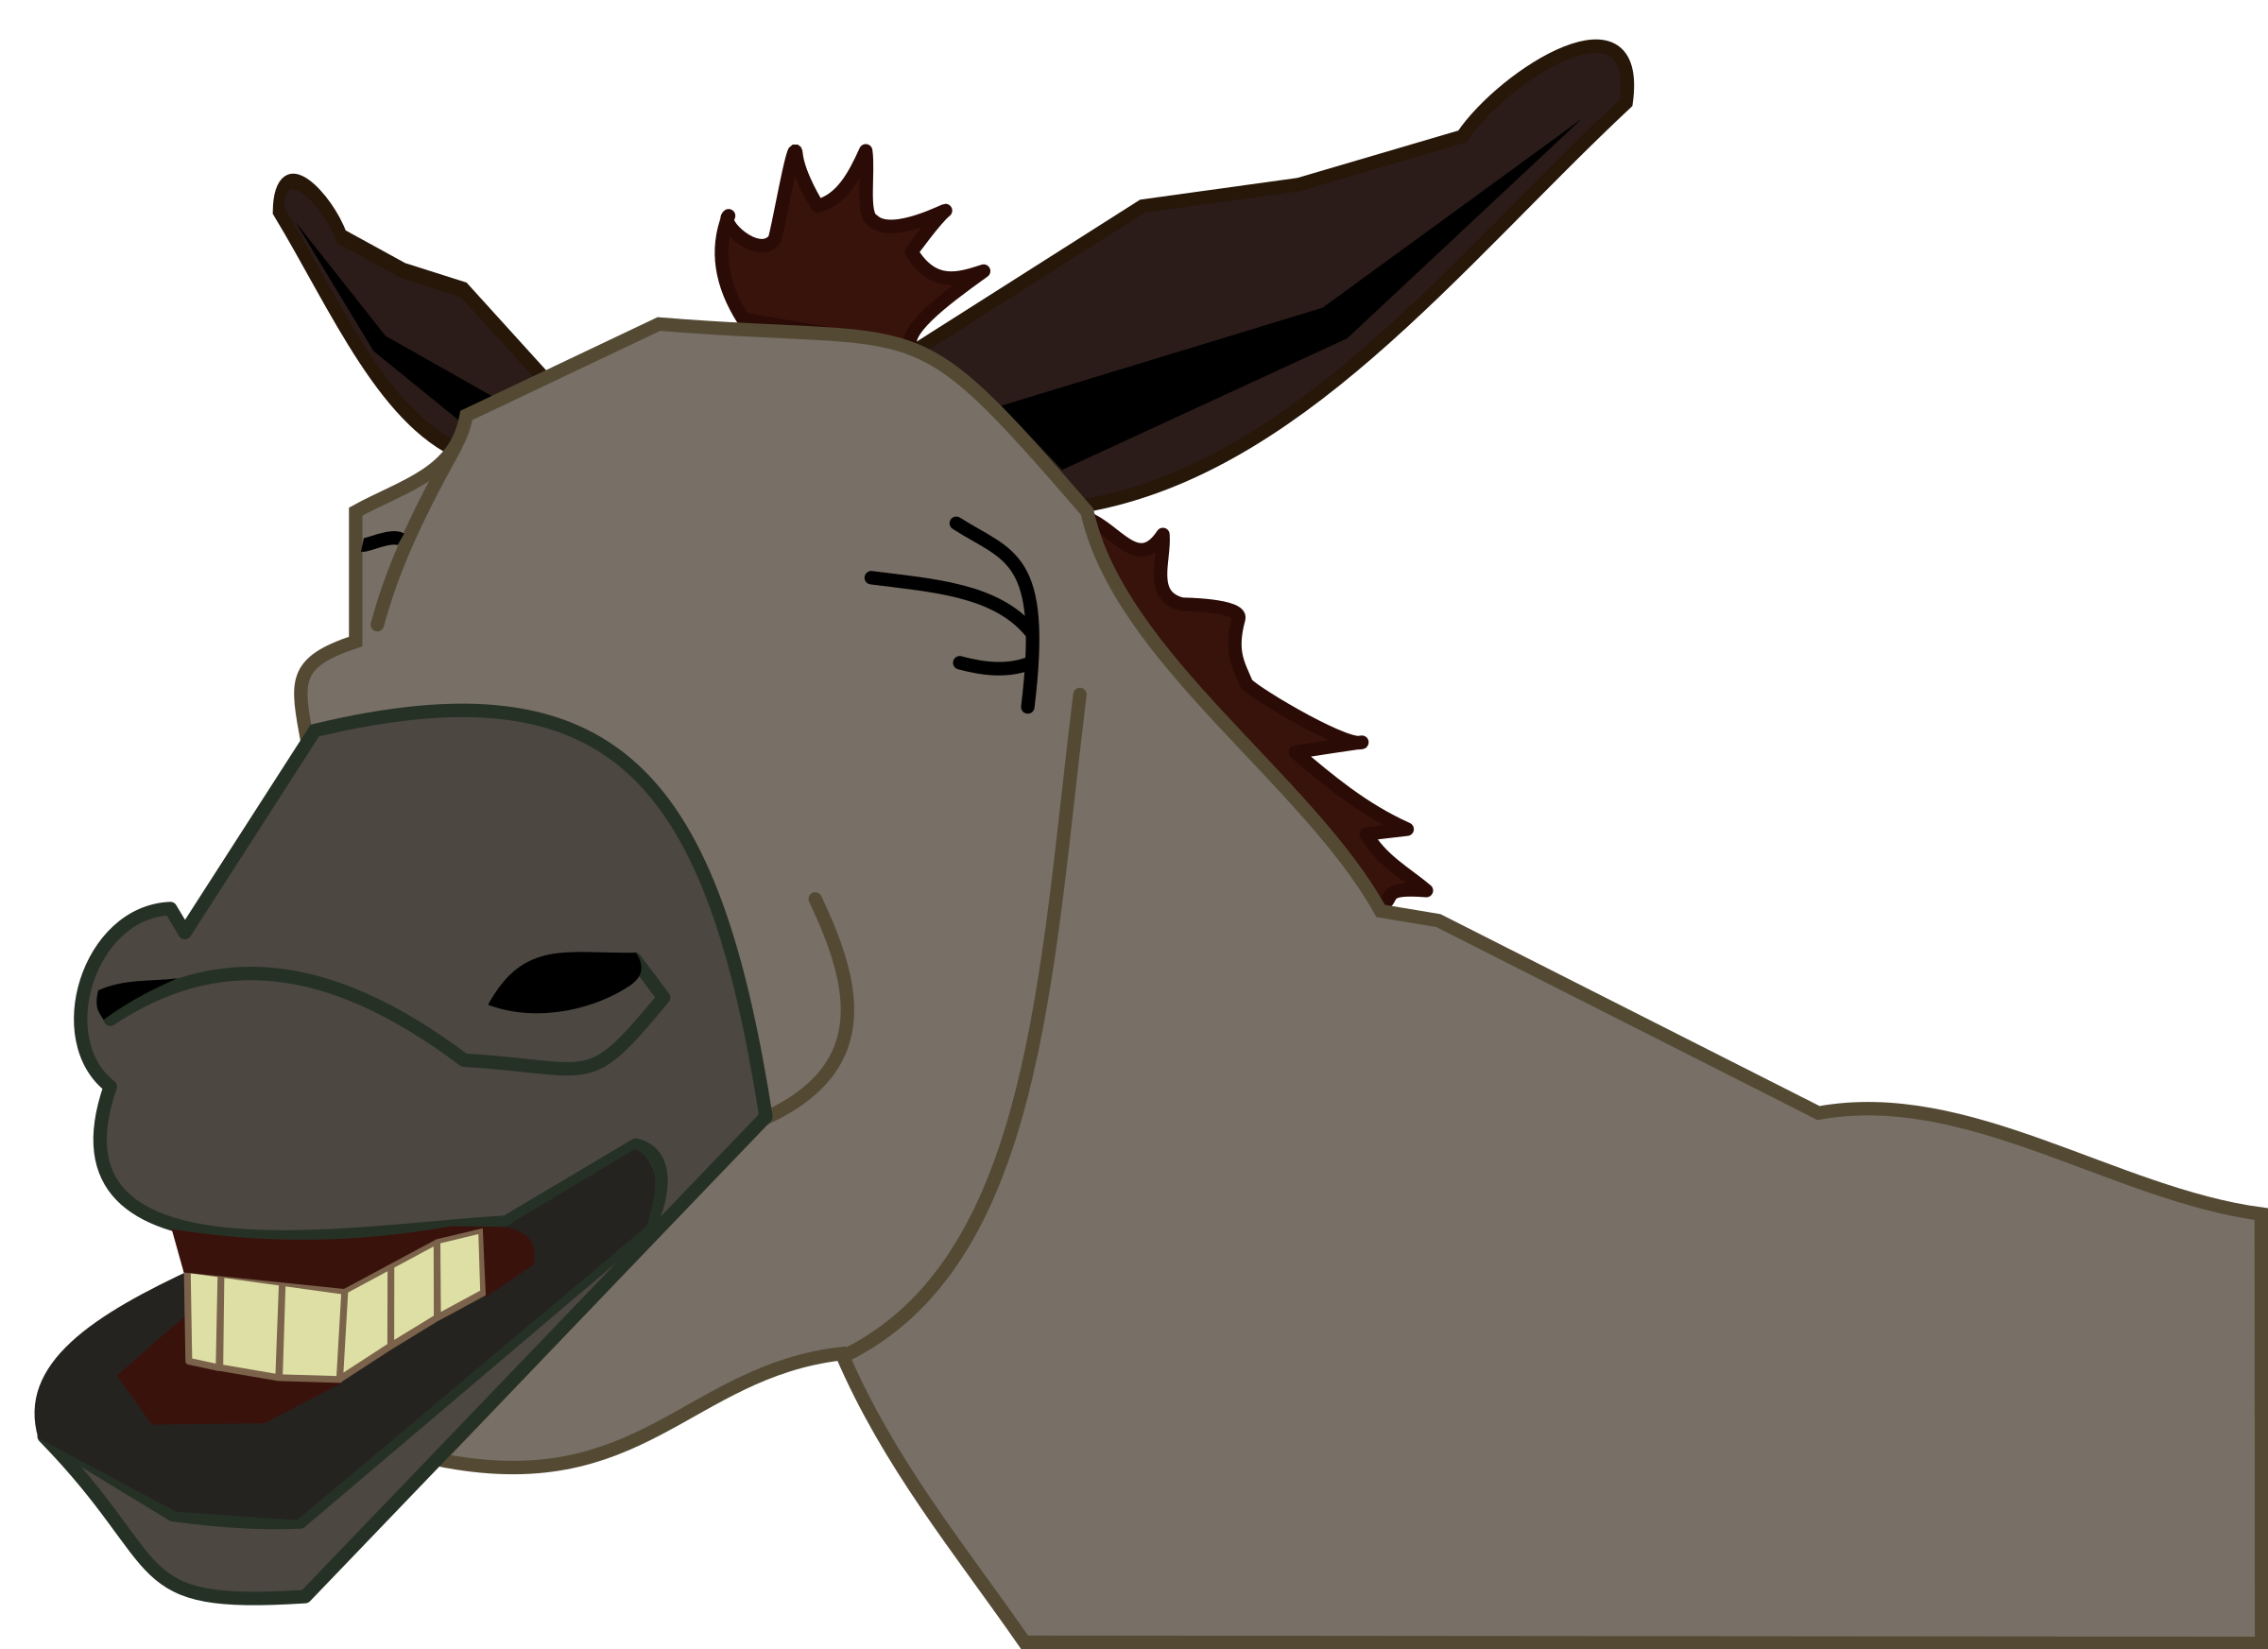 Mule donkey face